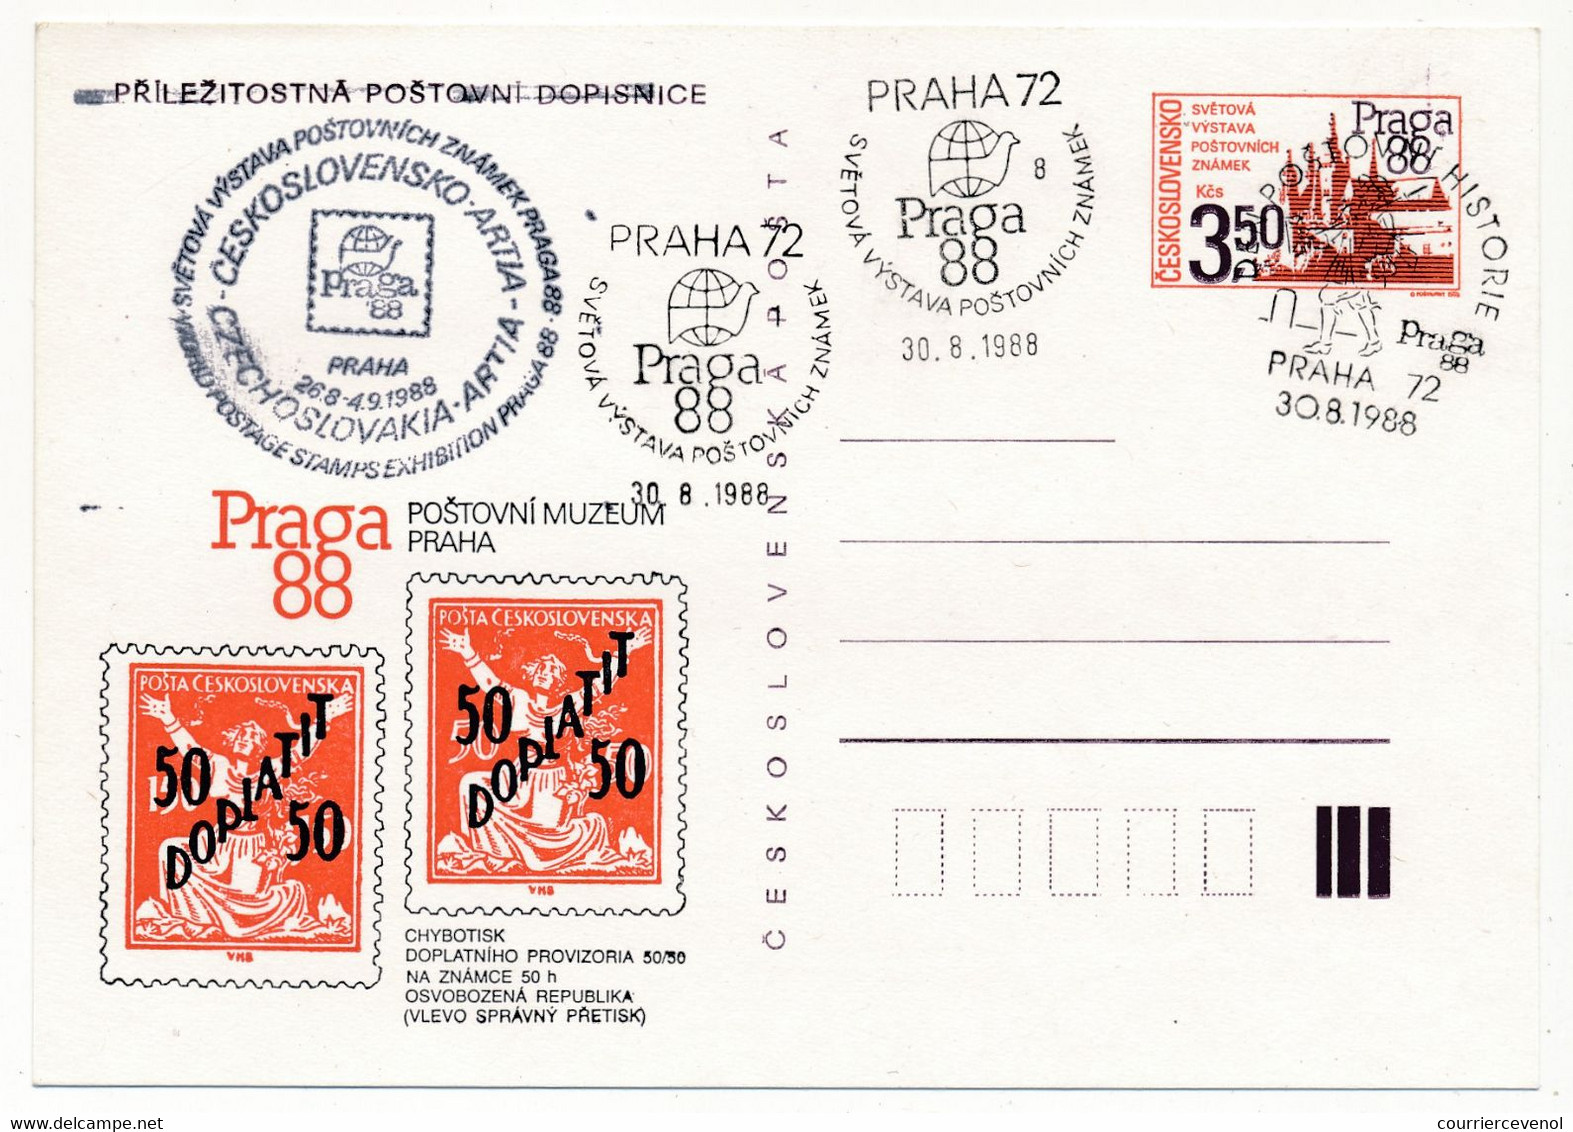 TCHECOSLOVAQUIE - Ensemble de 12 cartes postales (Entiers) au thème "PRAGA 88" - Tous Oblitérations Spéciales